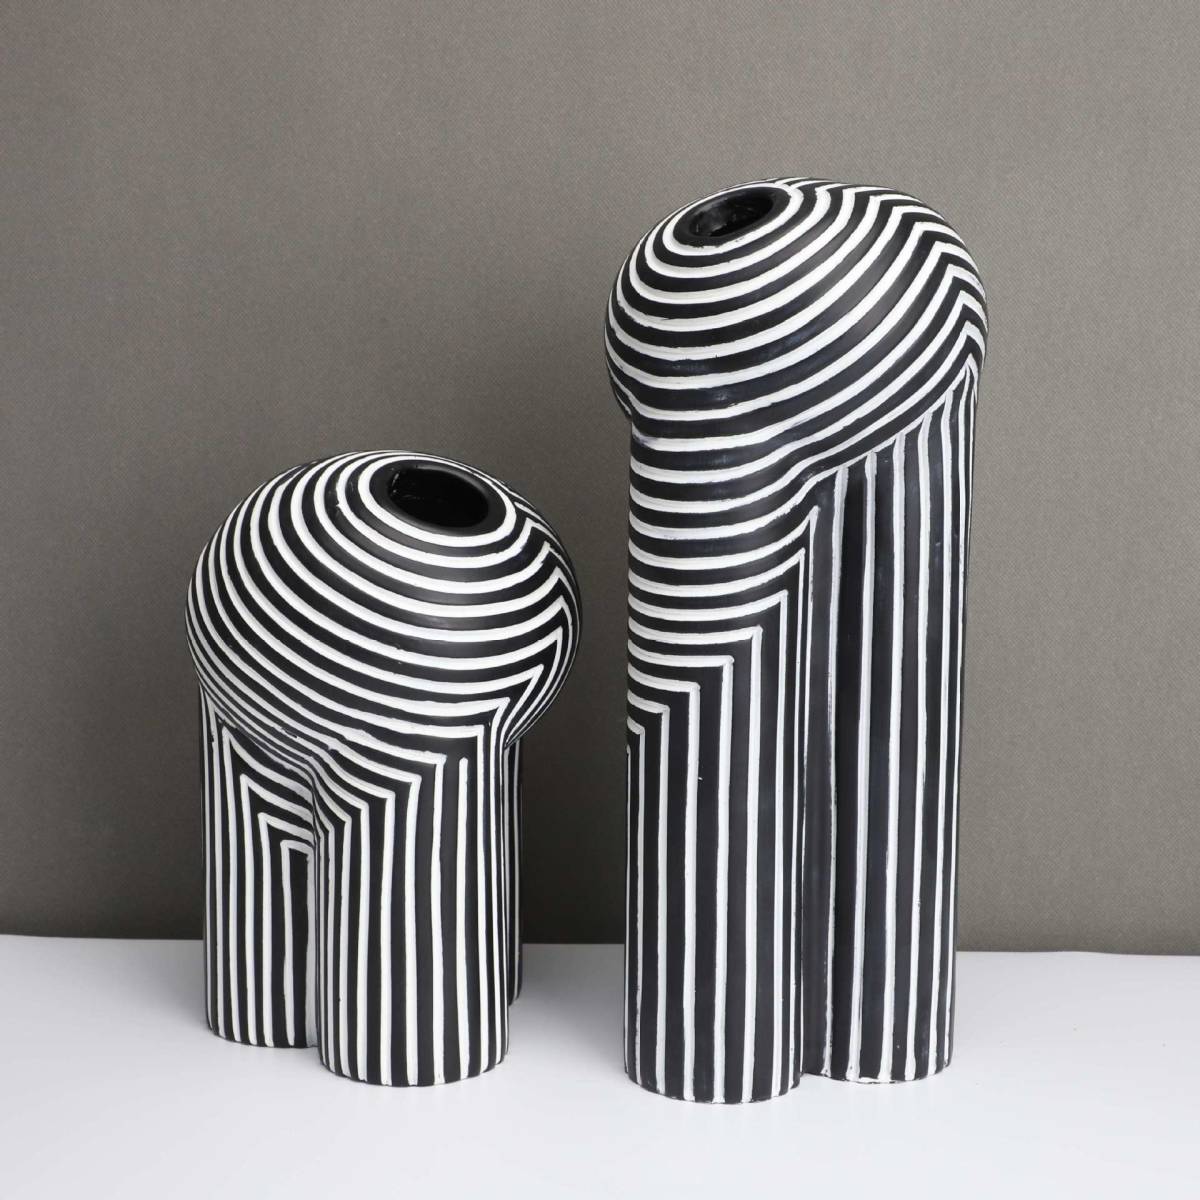  европейский стиль. ваза klieitib. белый чёрный. . узор ваза для цветов современный цветок основа черный белый полоса 2 размер 